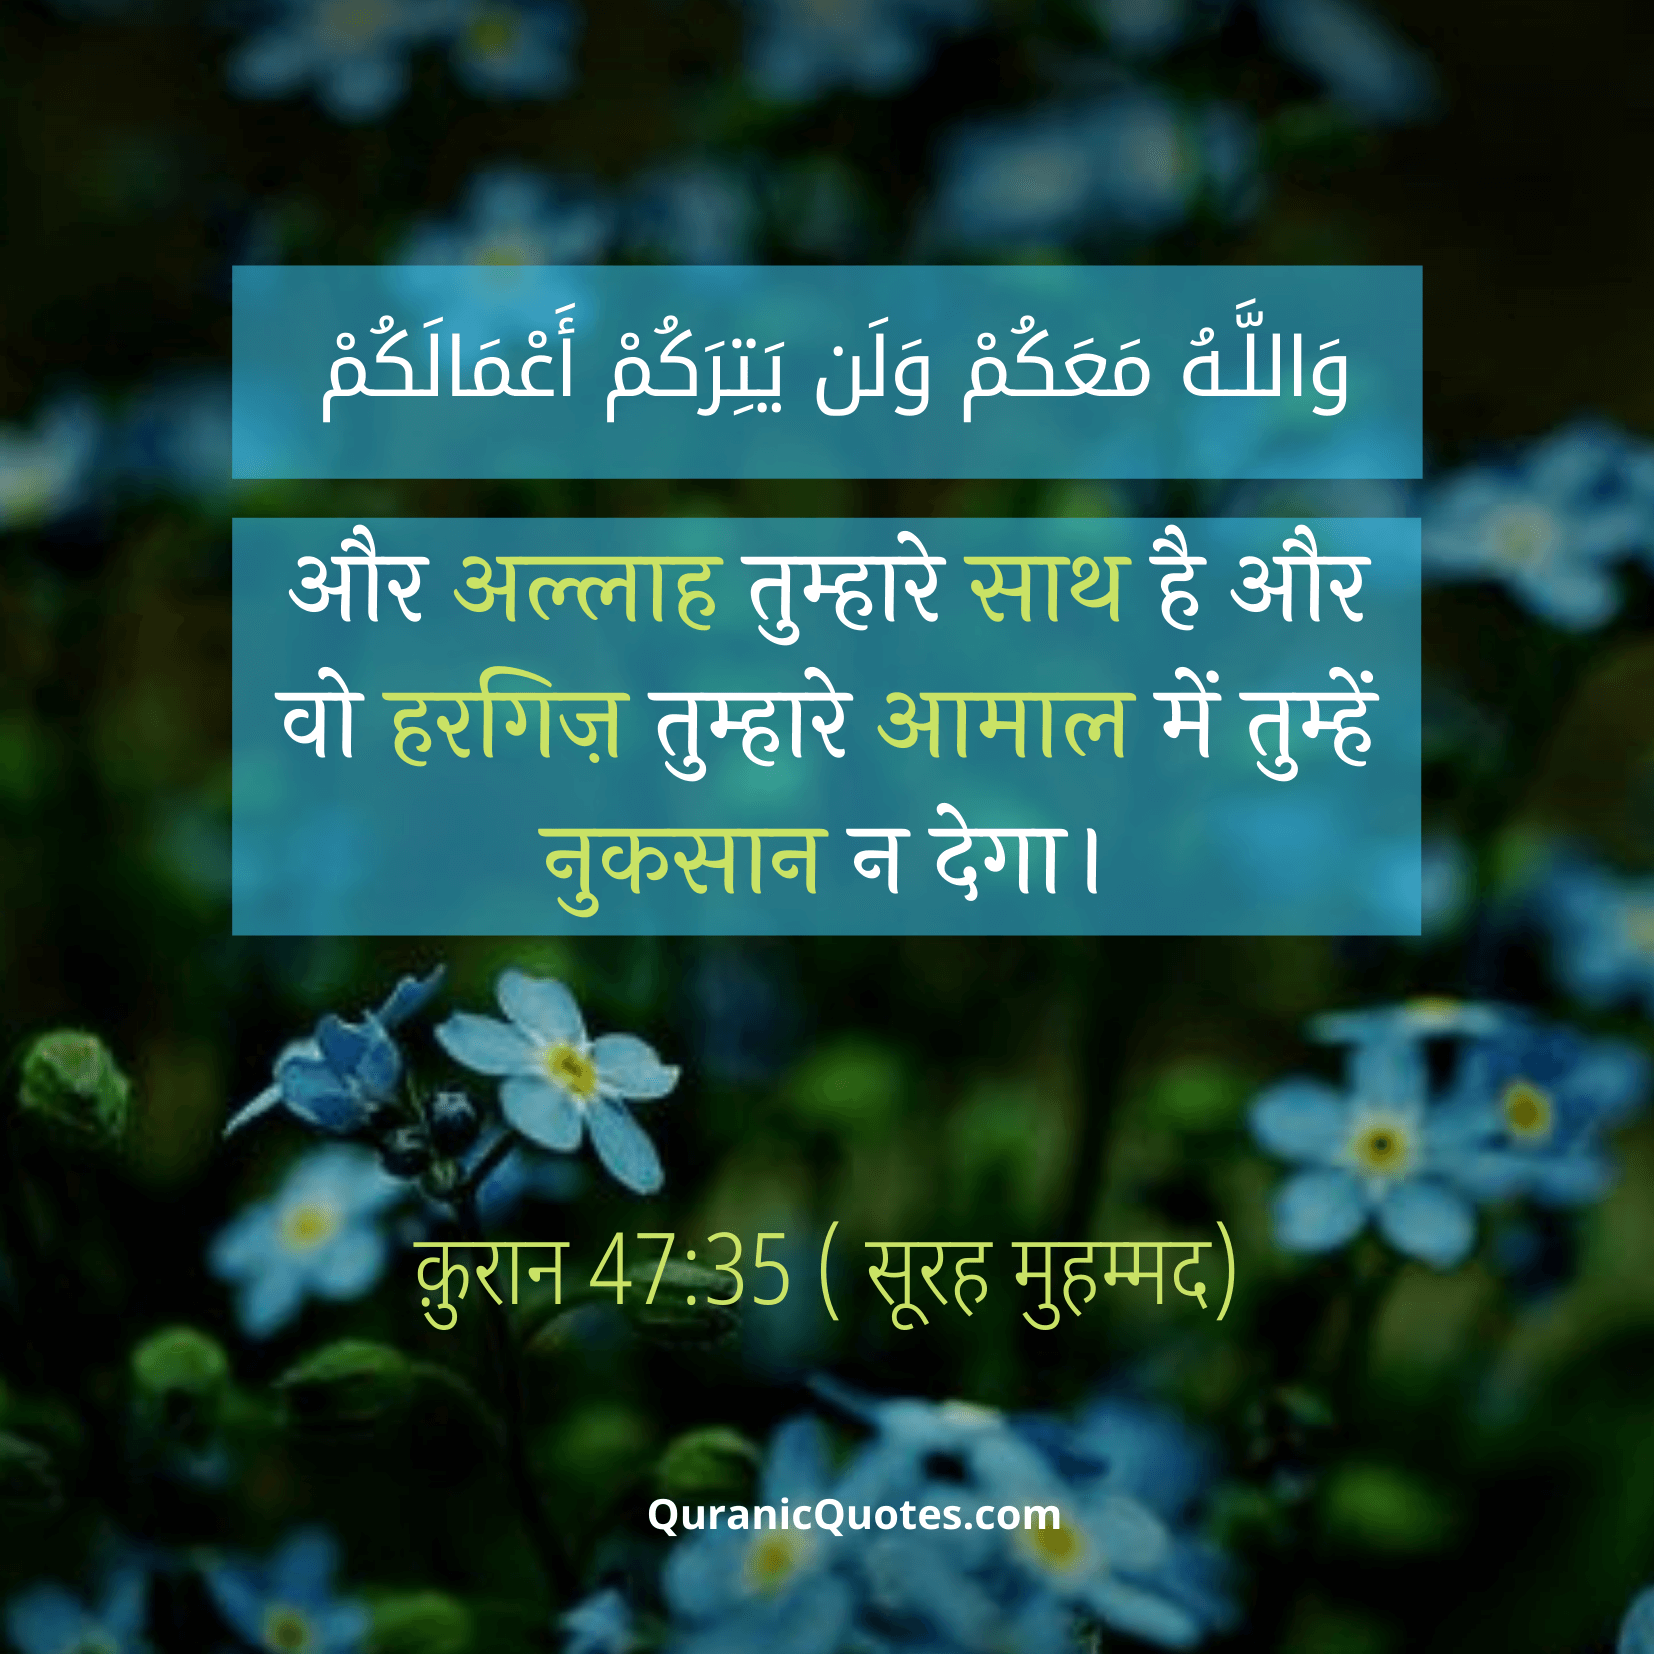 Quranic Quotes Hindi #76